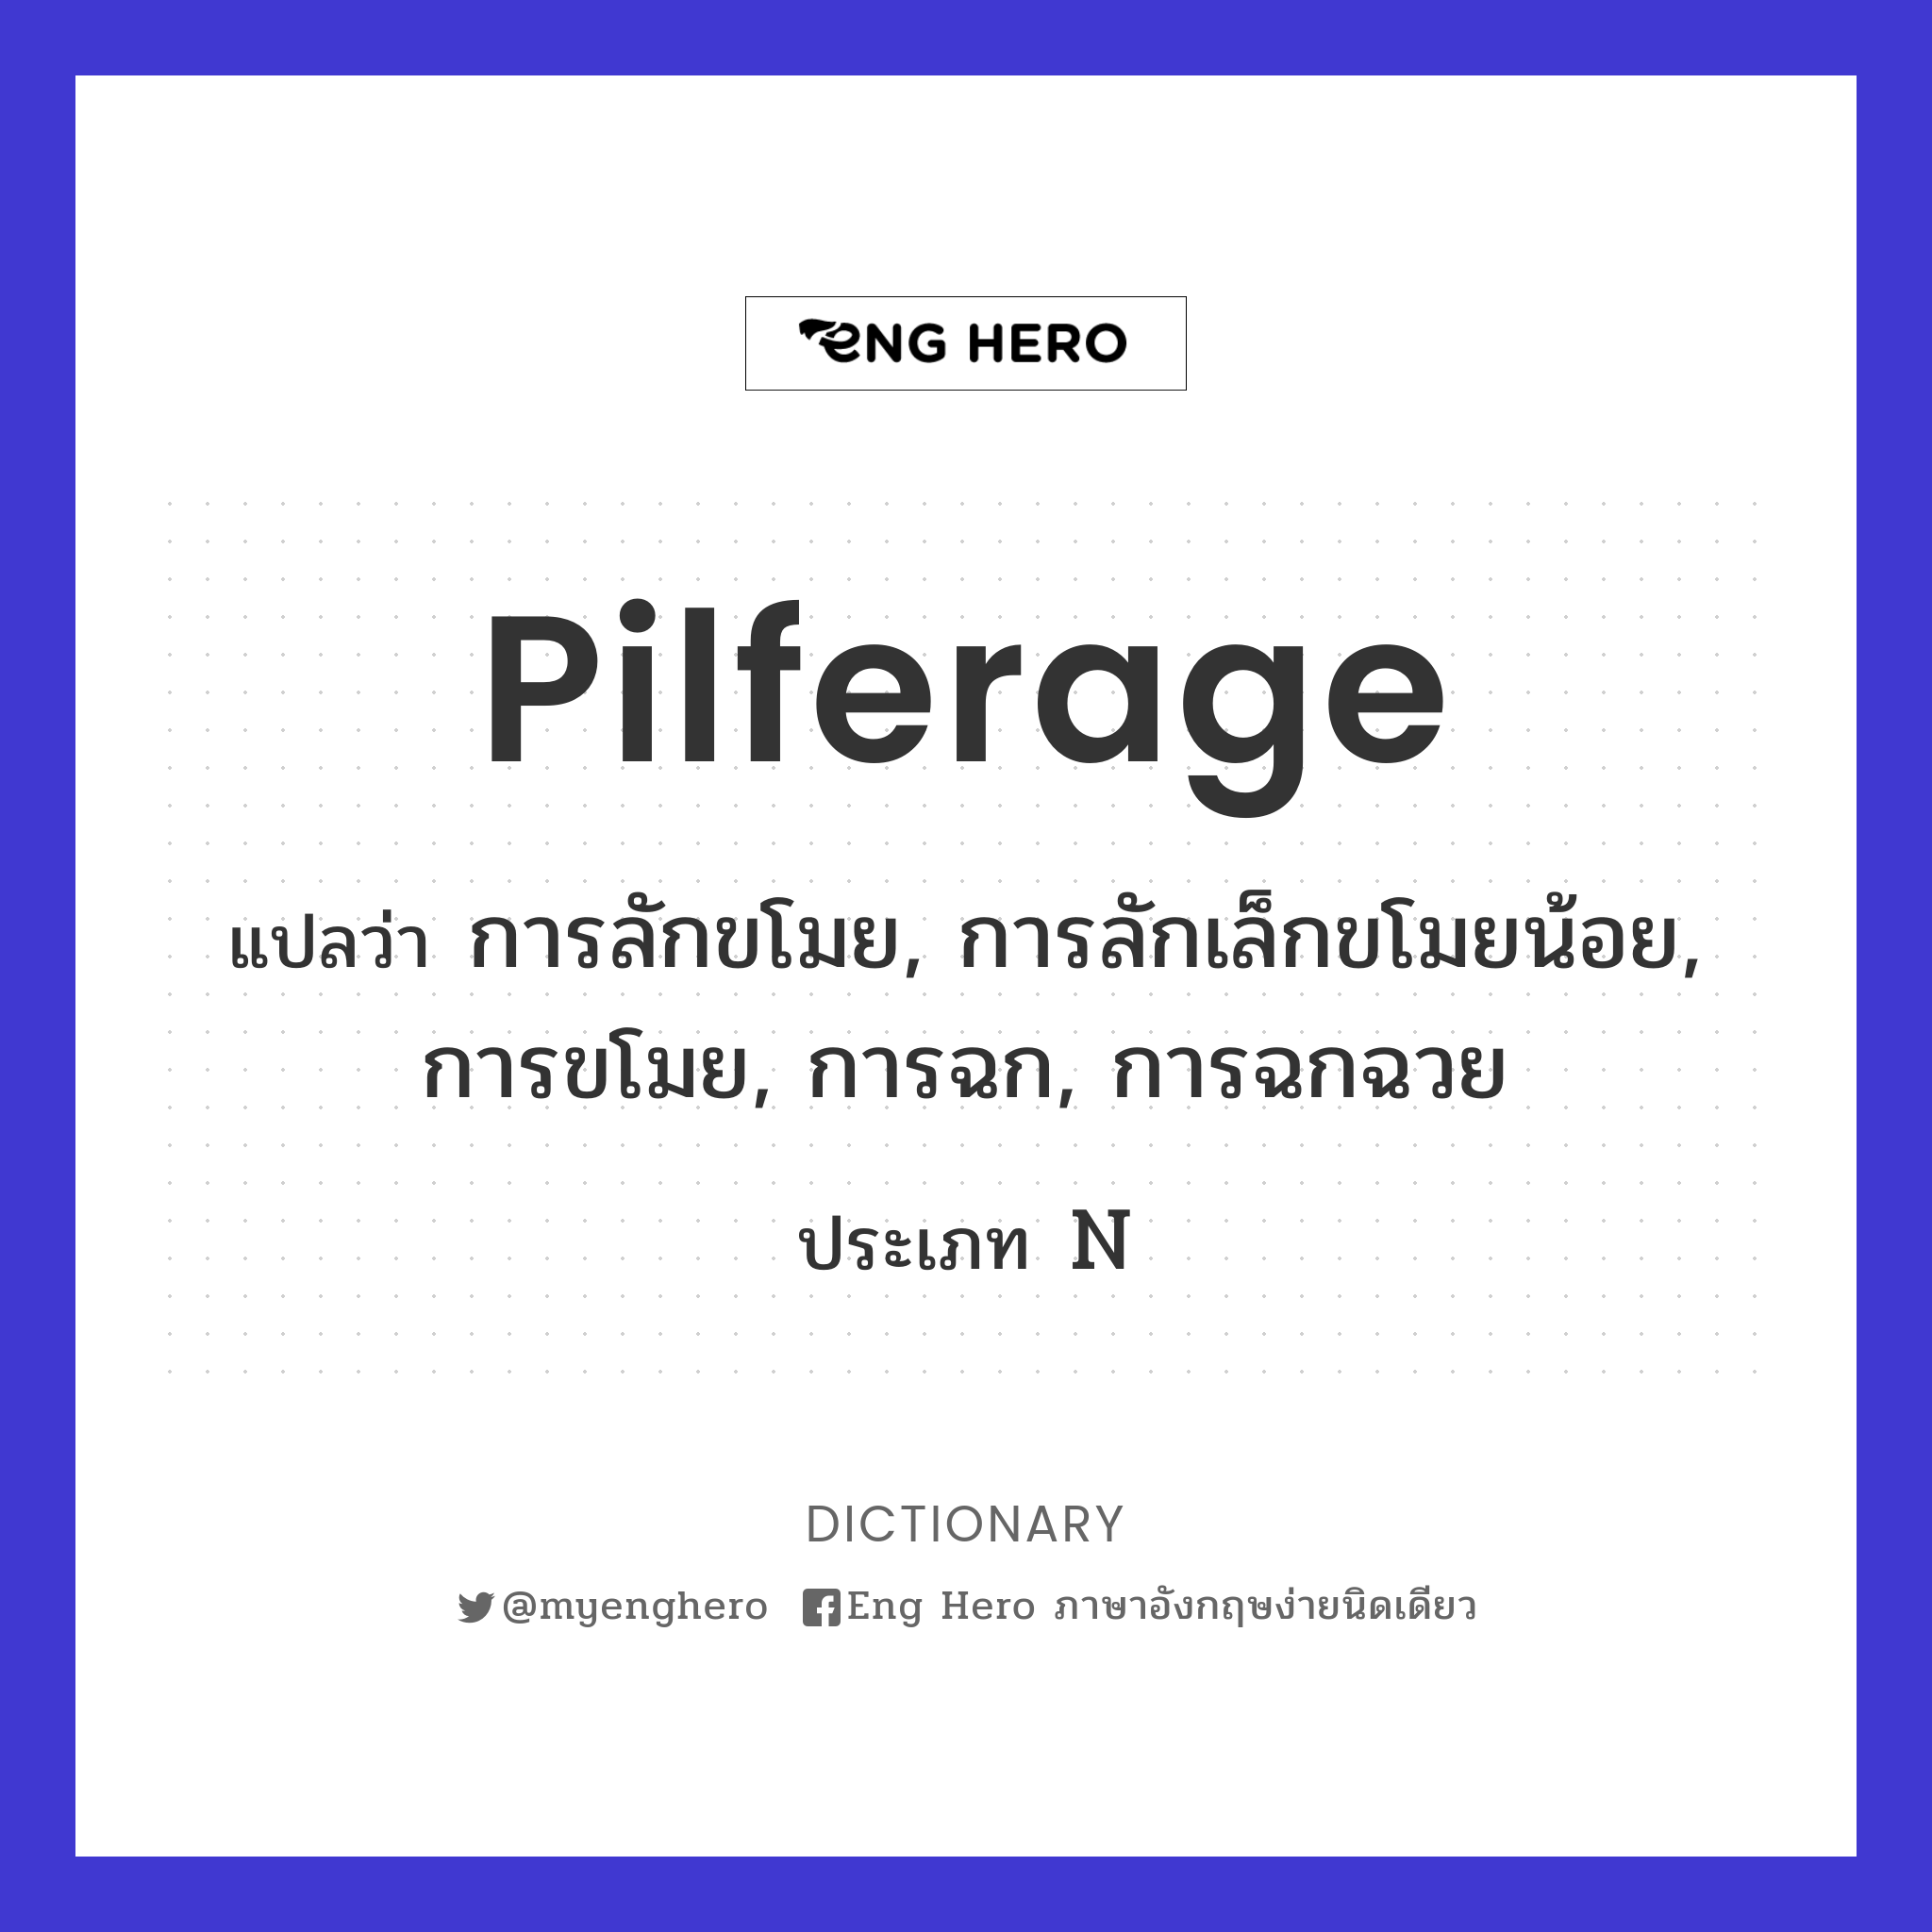 pilferage